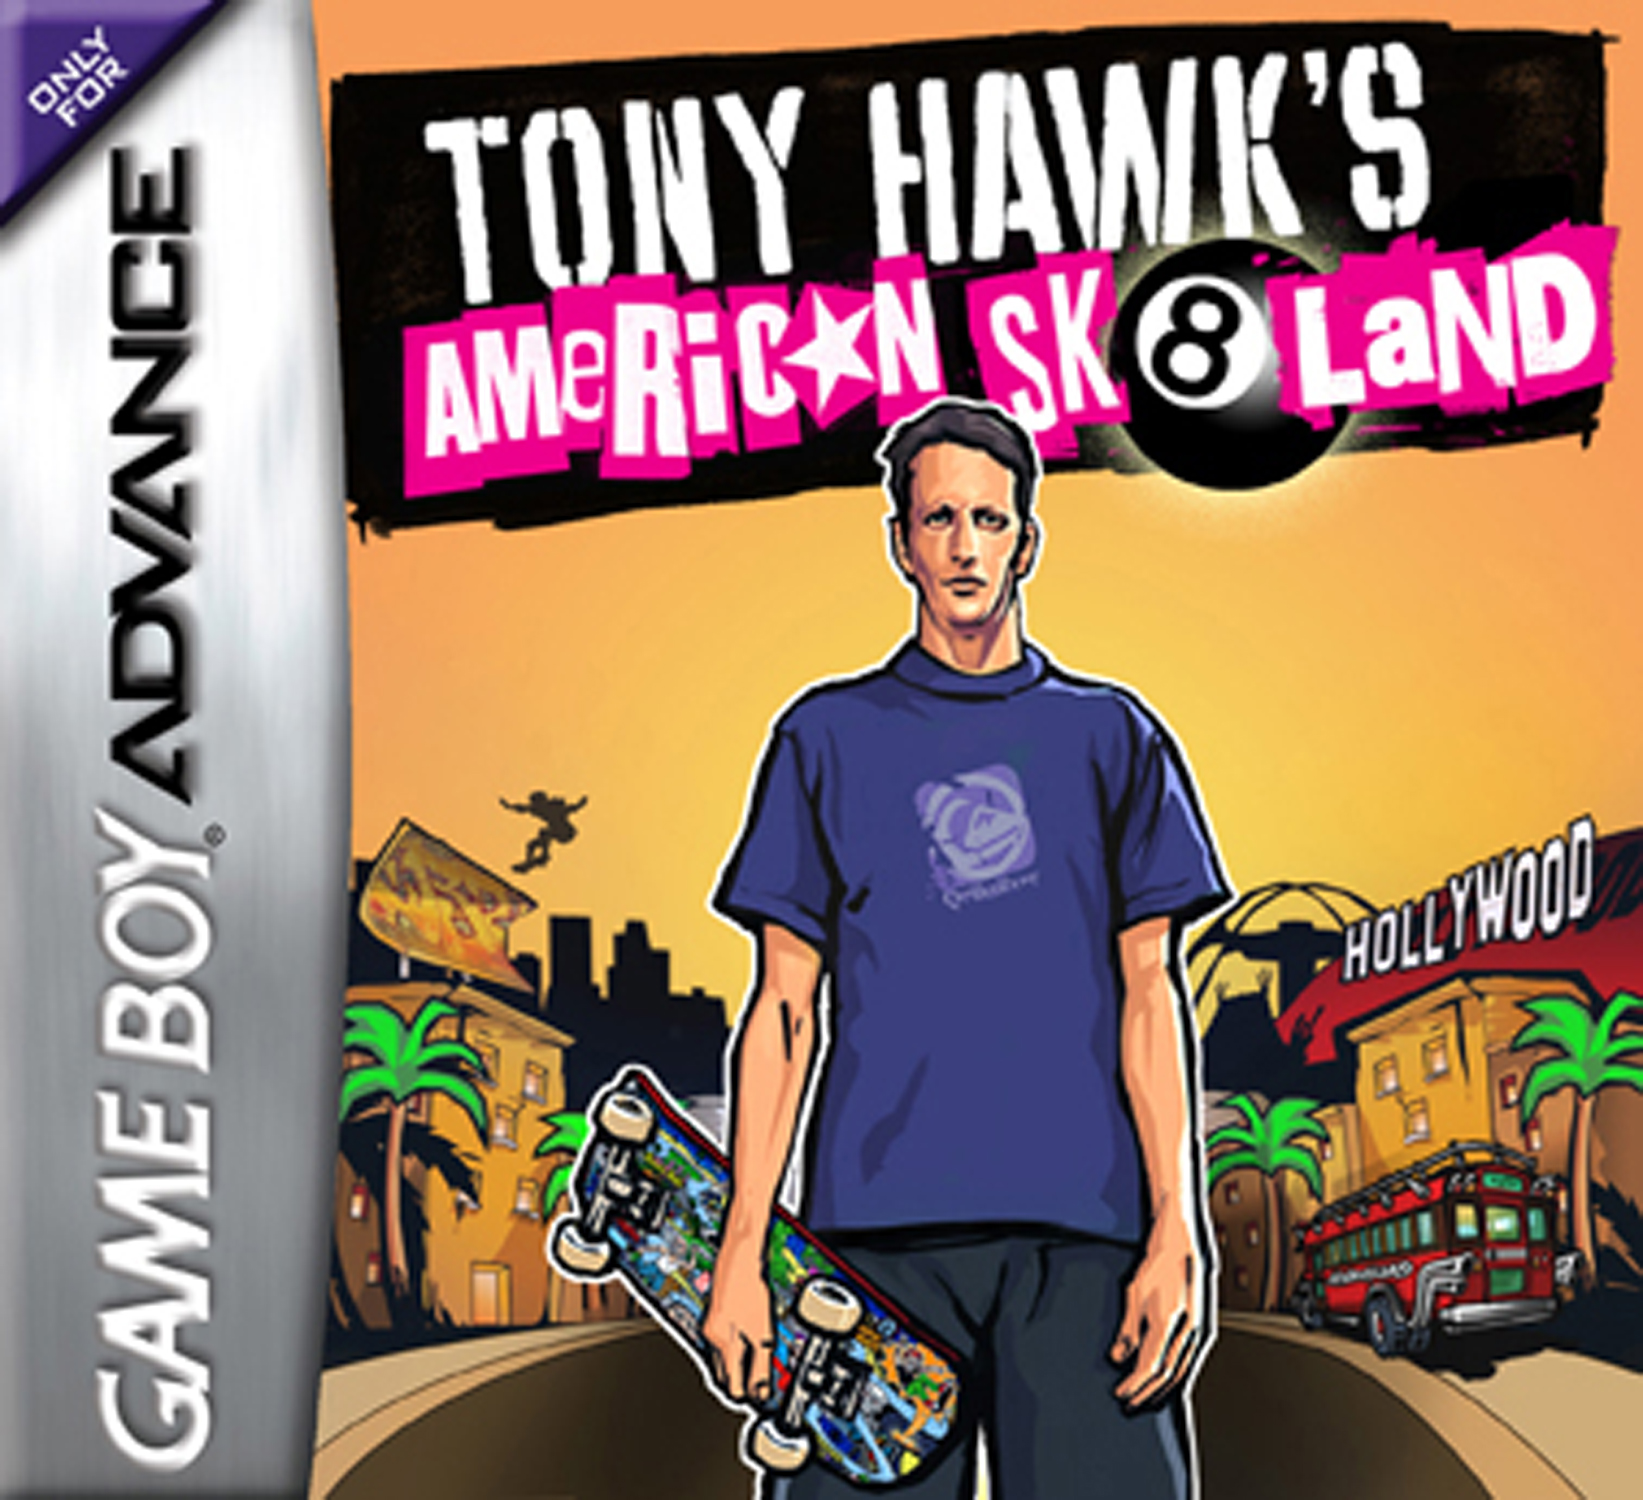 Тони Хоук американский скейтер / Tony Hawk’s American SK8LAND